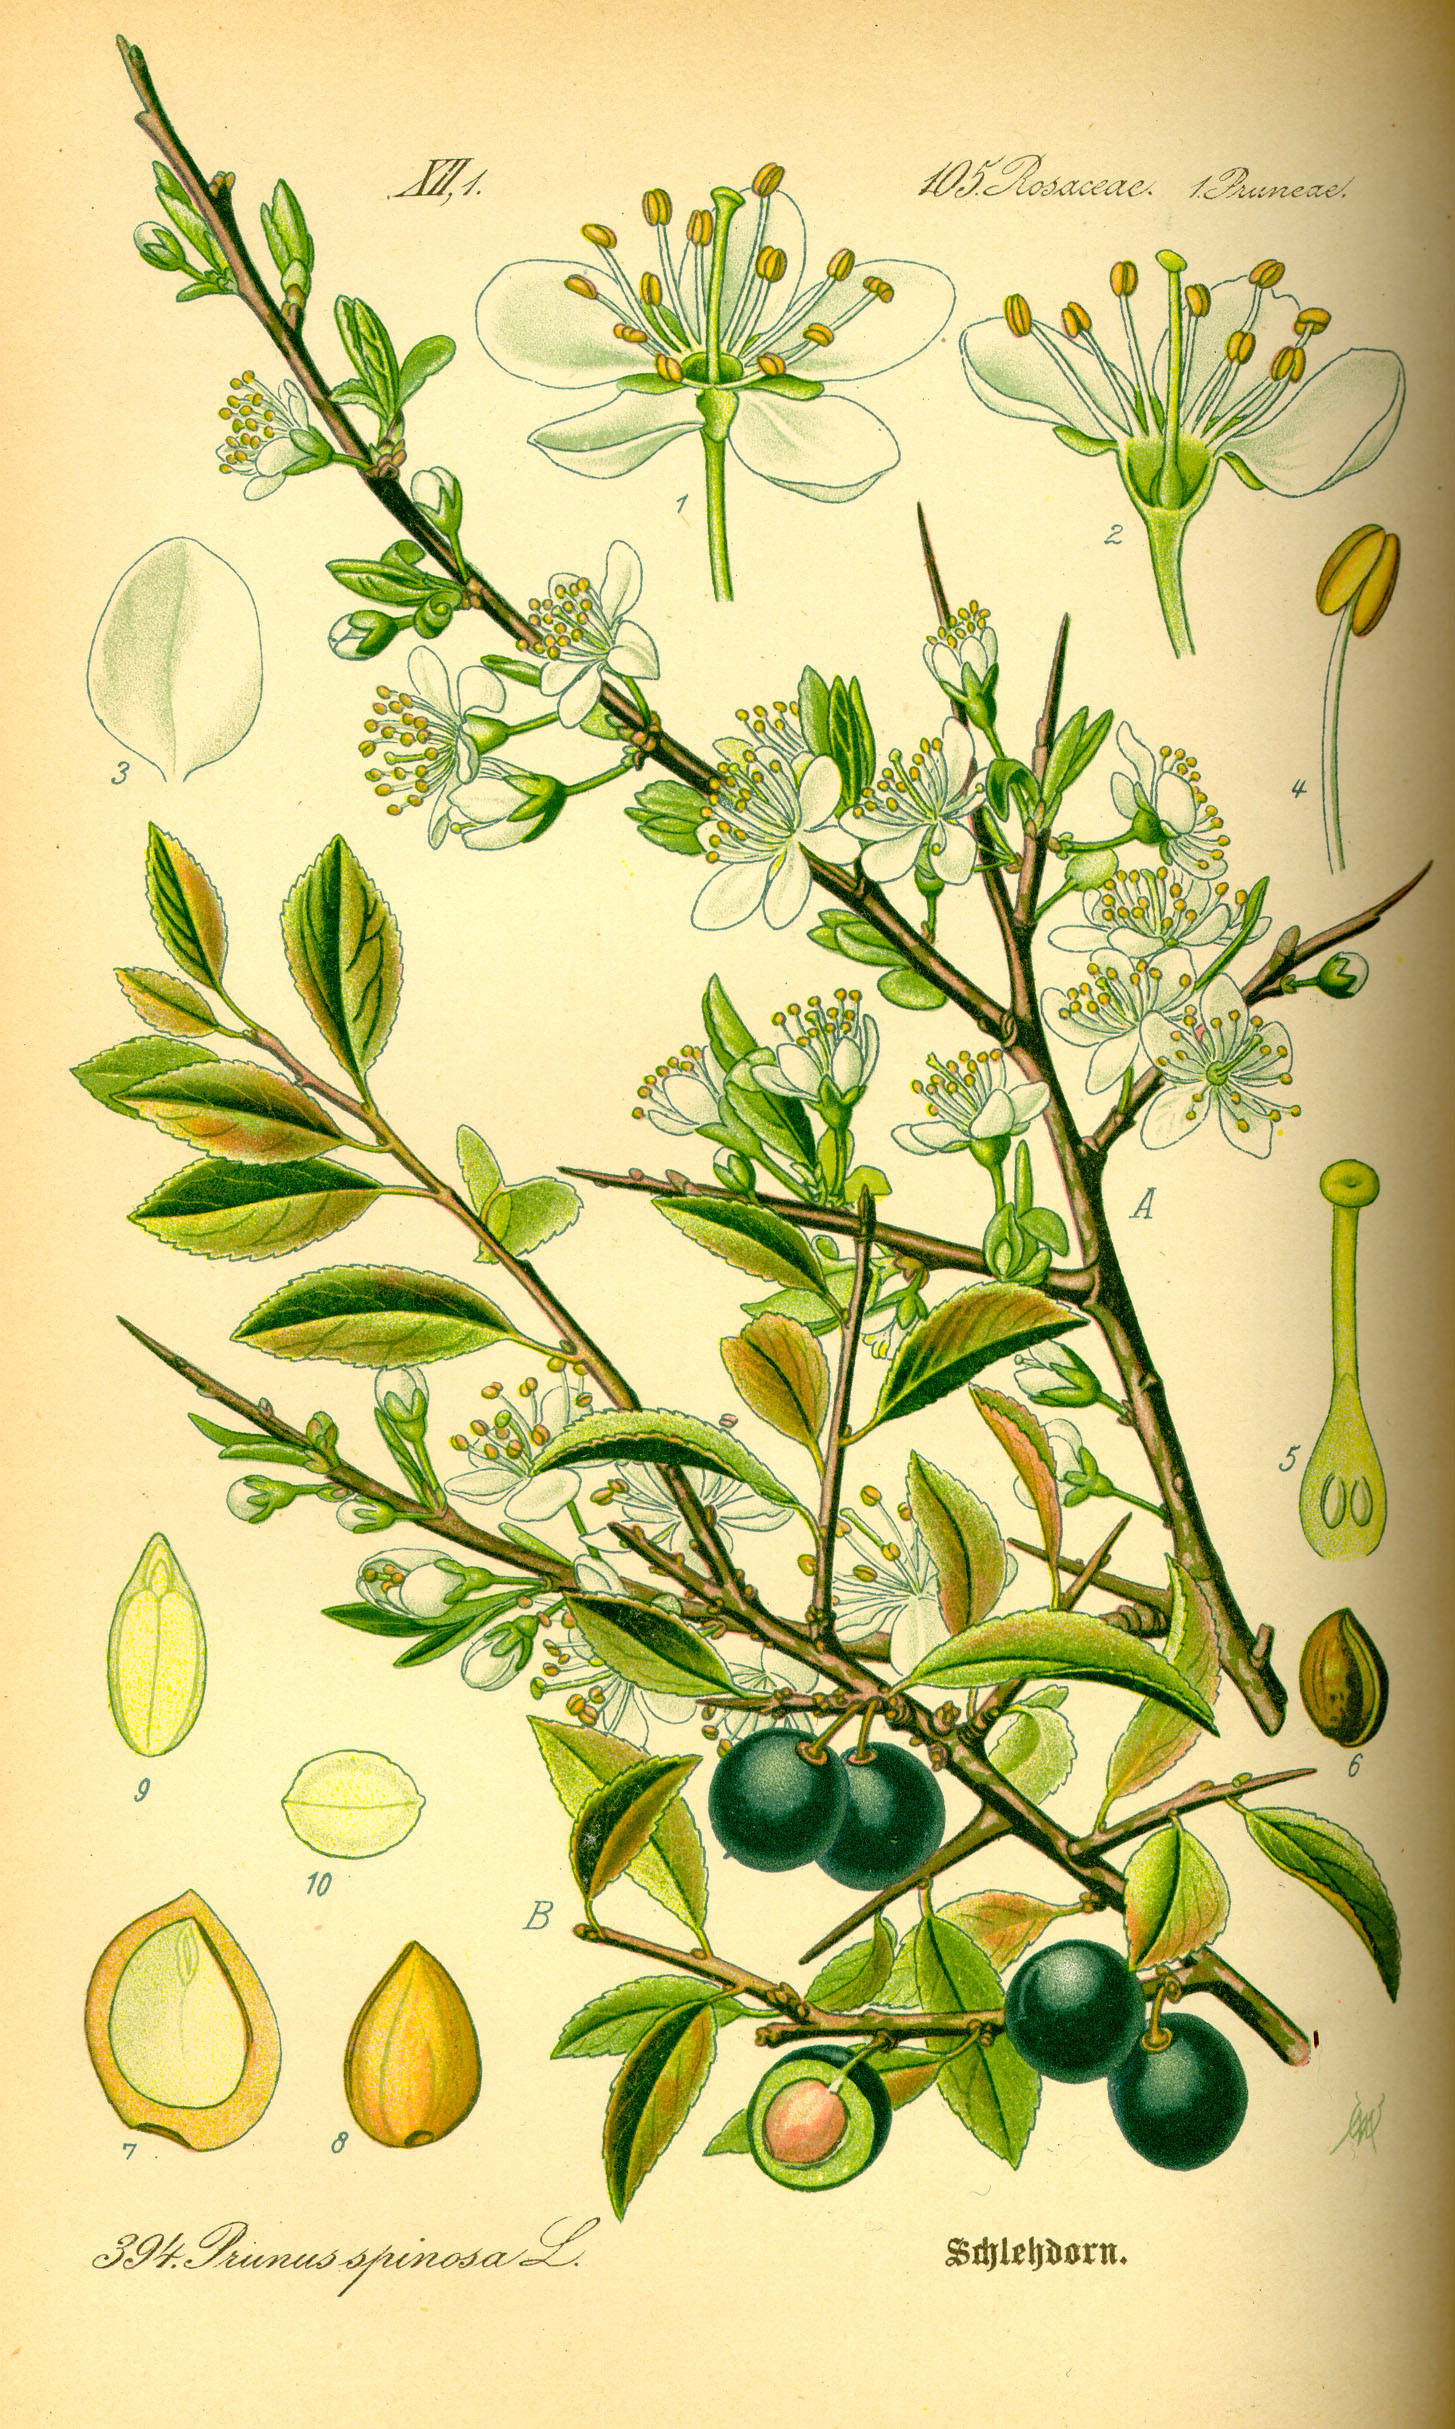 http://wildekraeuterey.de/images/Illustration_Prunus_spinosa0.jpg